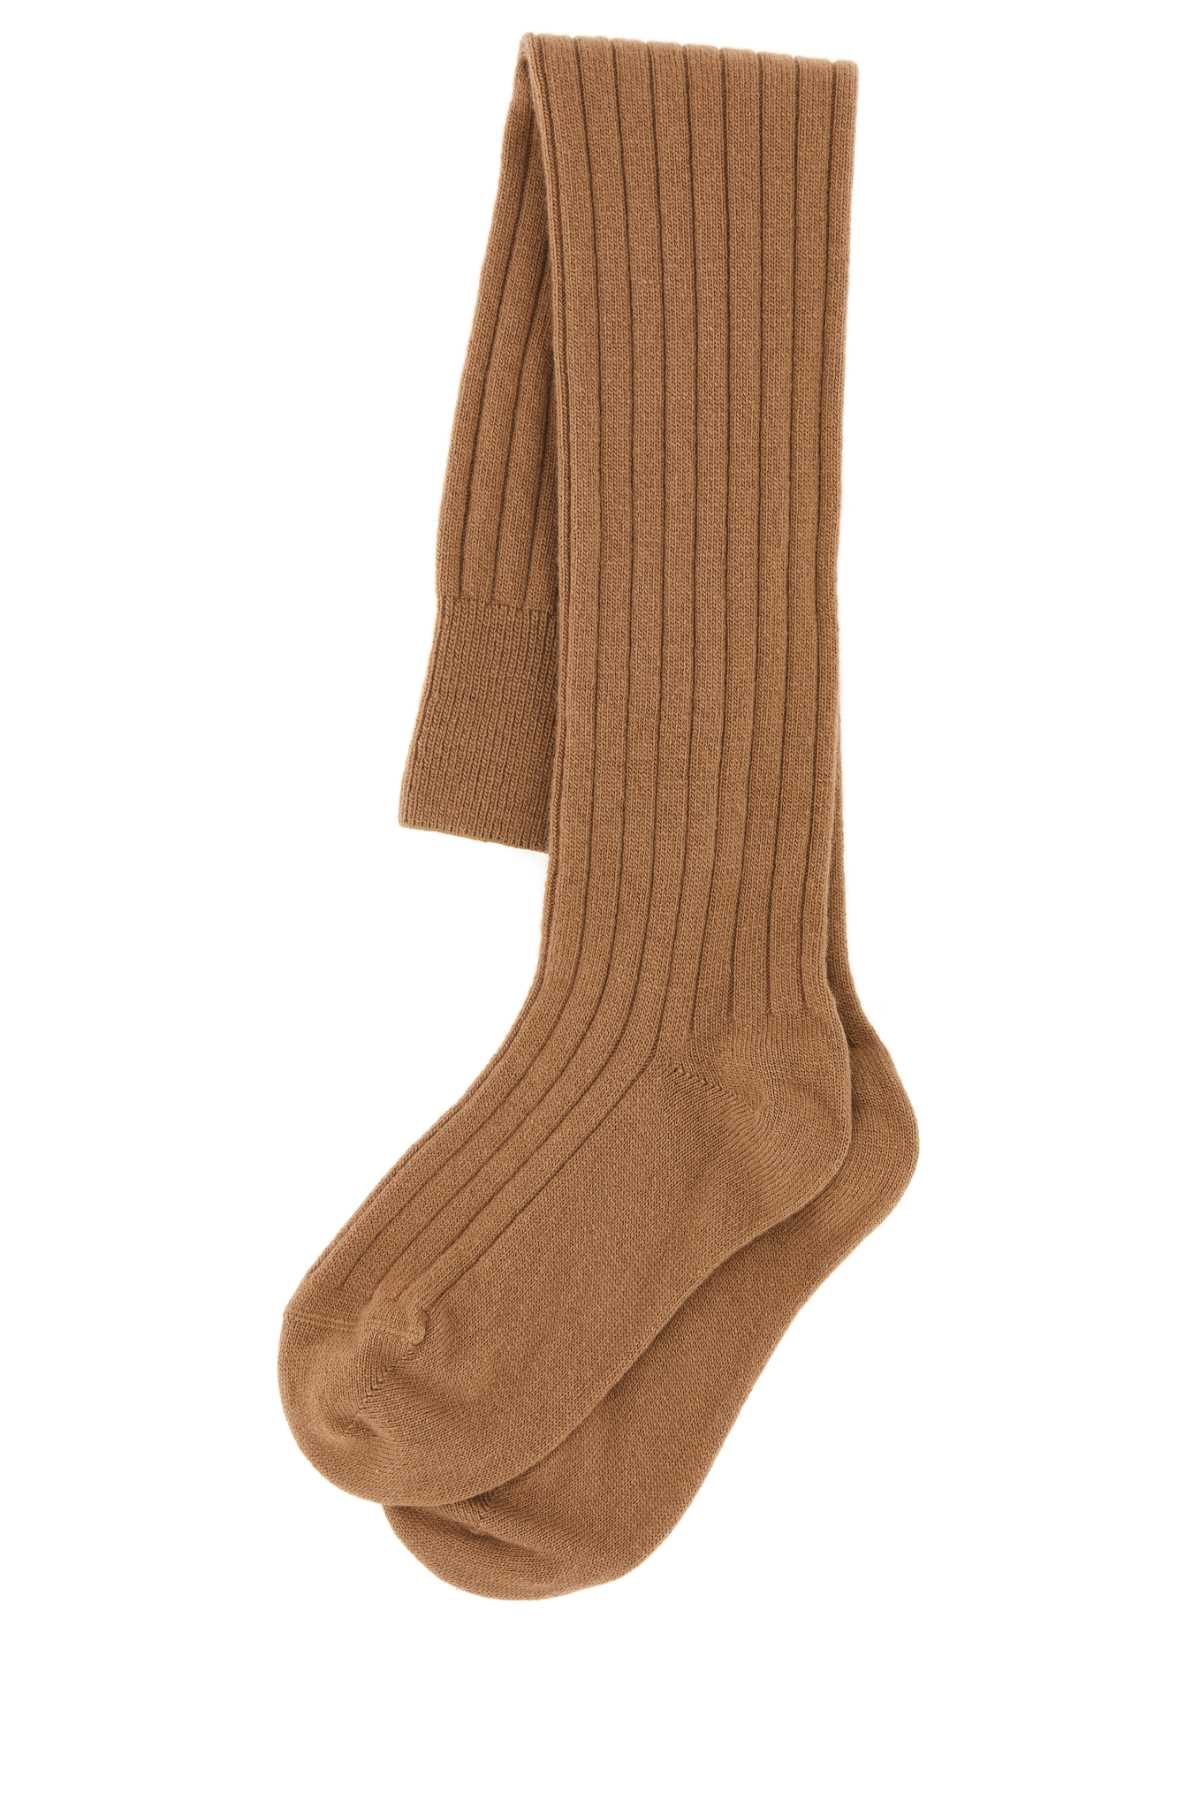 Prada Camel Stretch Wool Blend Socks